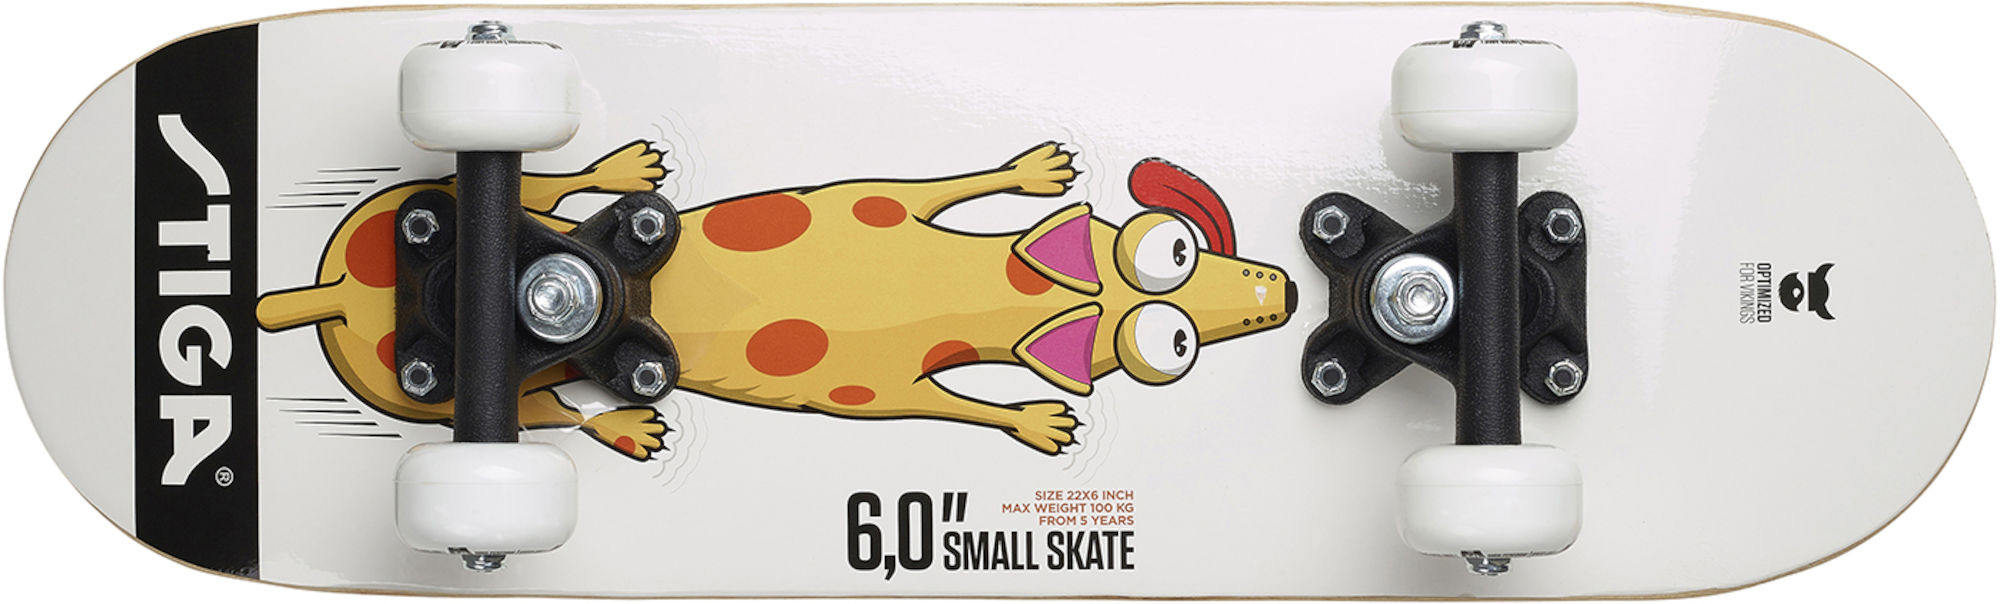 STIGA Dog 6.0 Skateboard